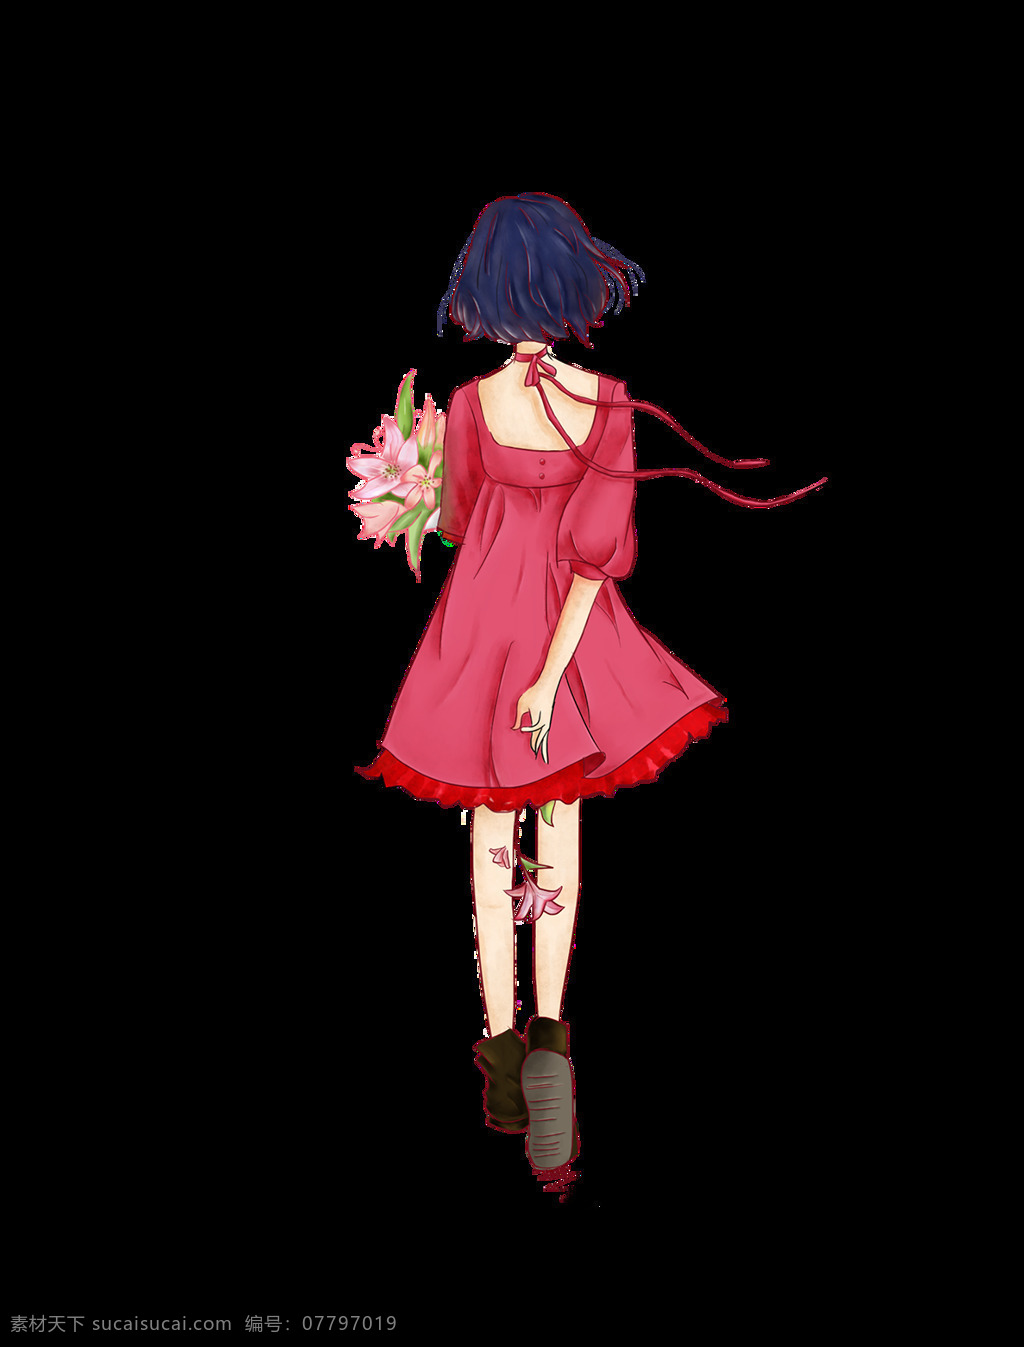 手绘 时尚 女孩 装饰 红色 花朵 背影 精致 短发